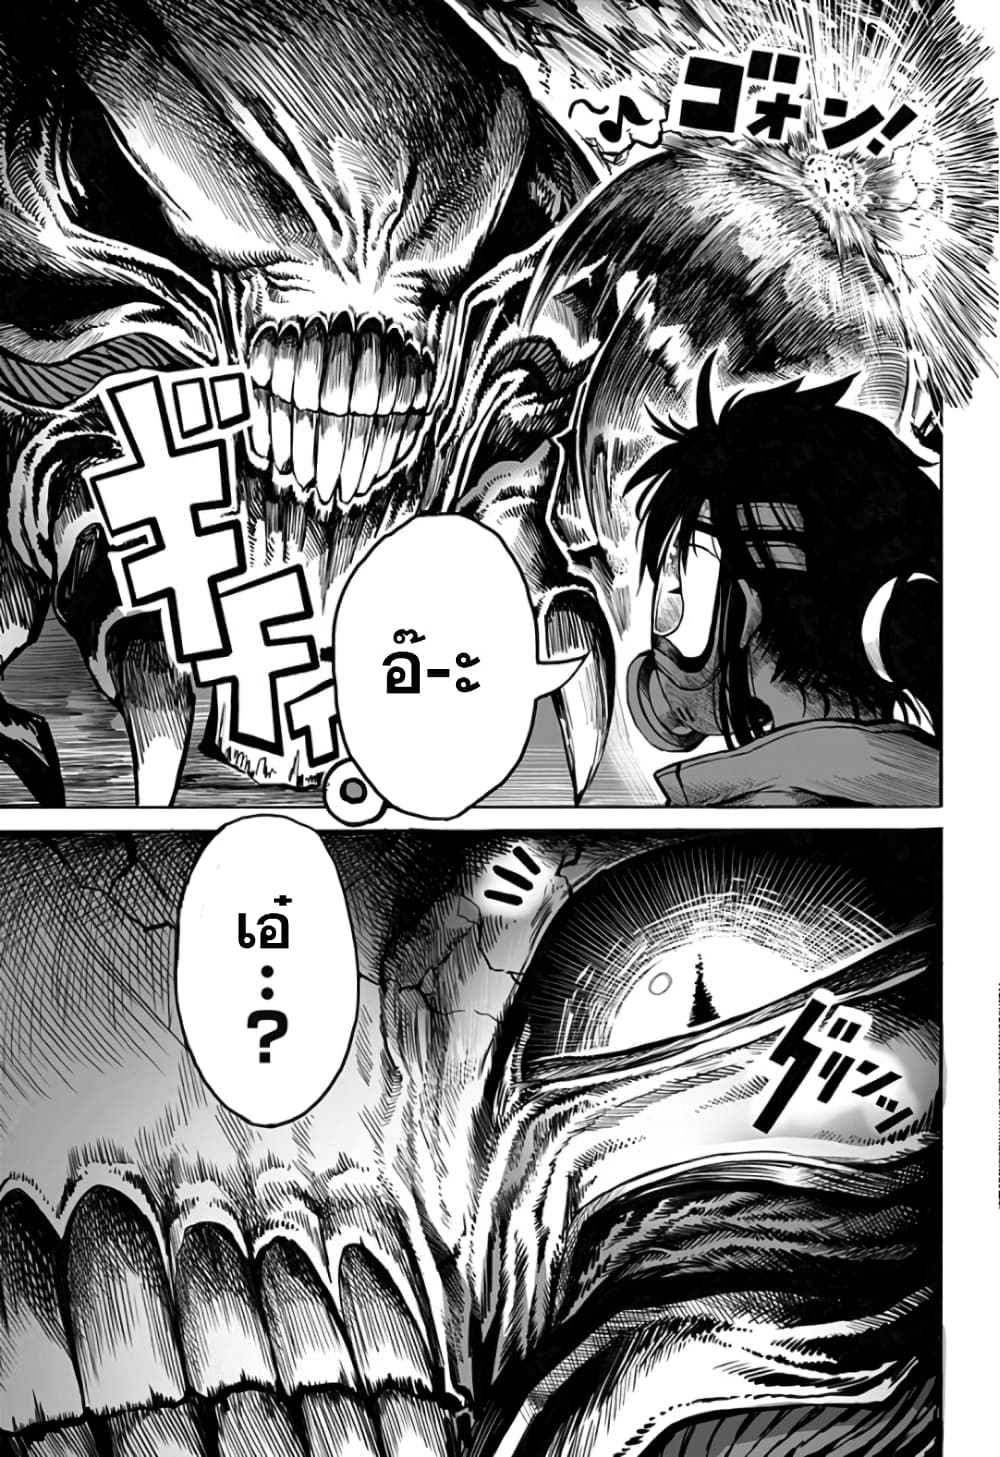 อ่านการ์ตูน Mutant wa ningen no kanojo to kisu ga shitai 4 ภาพที่ 13